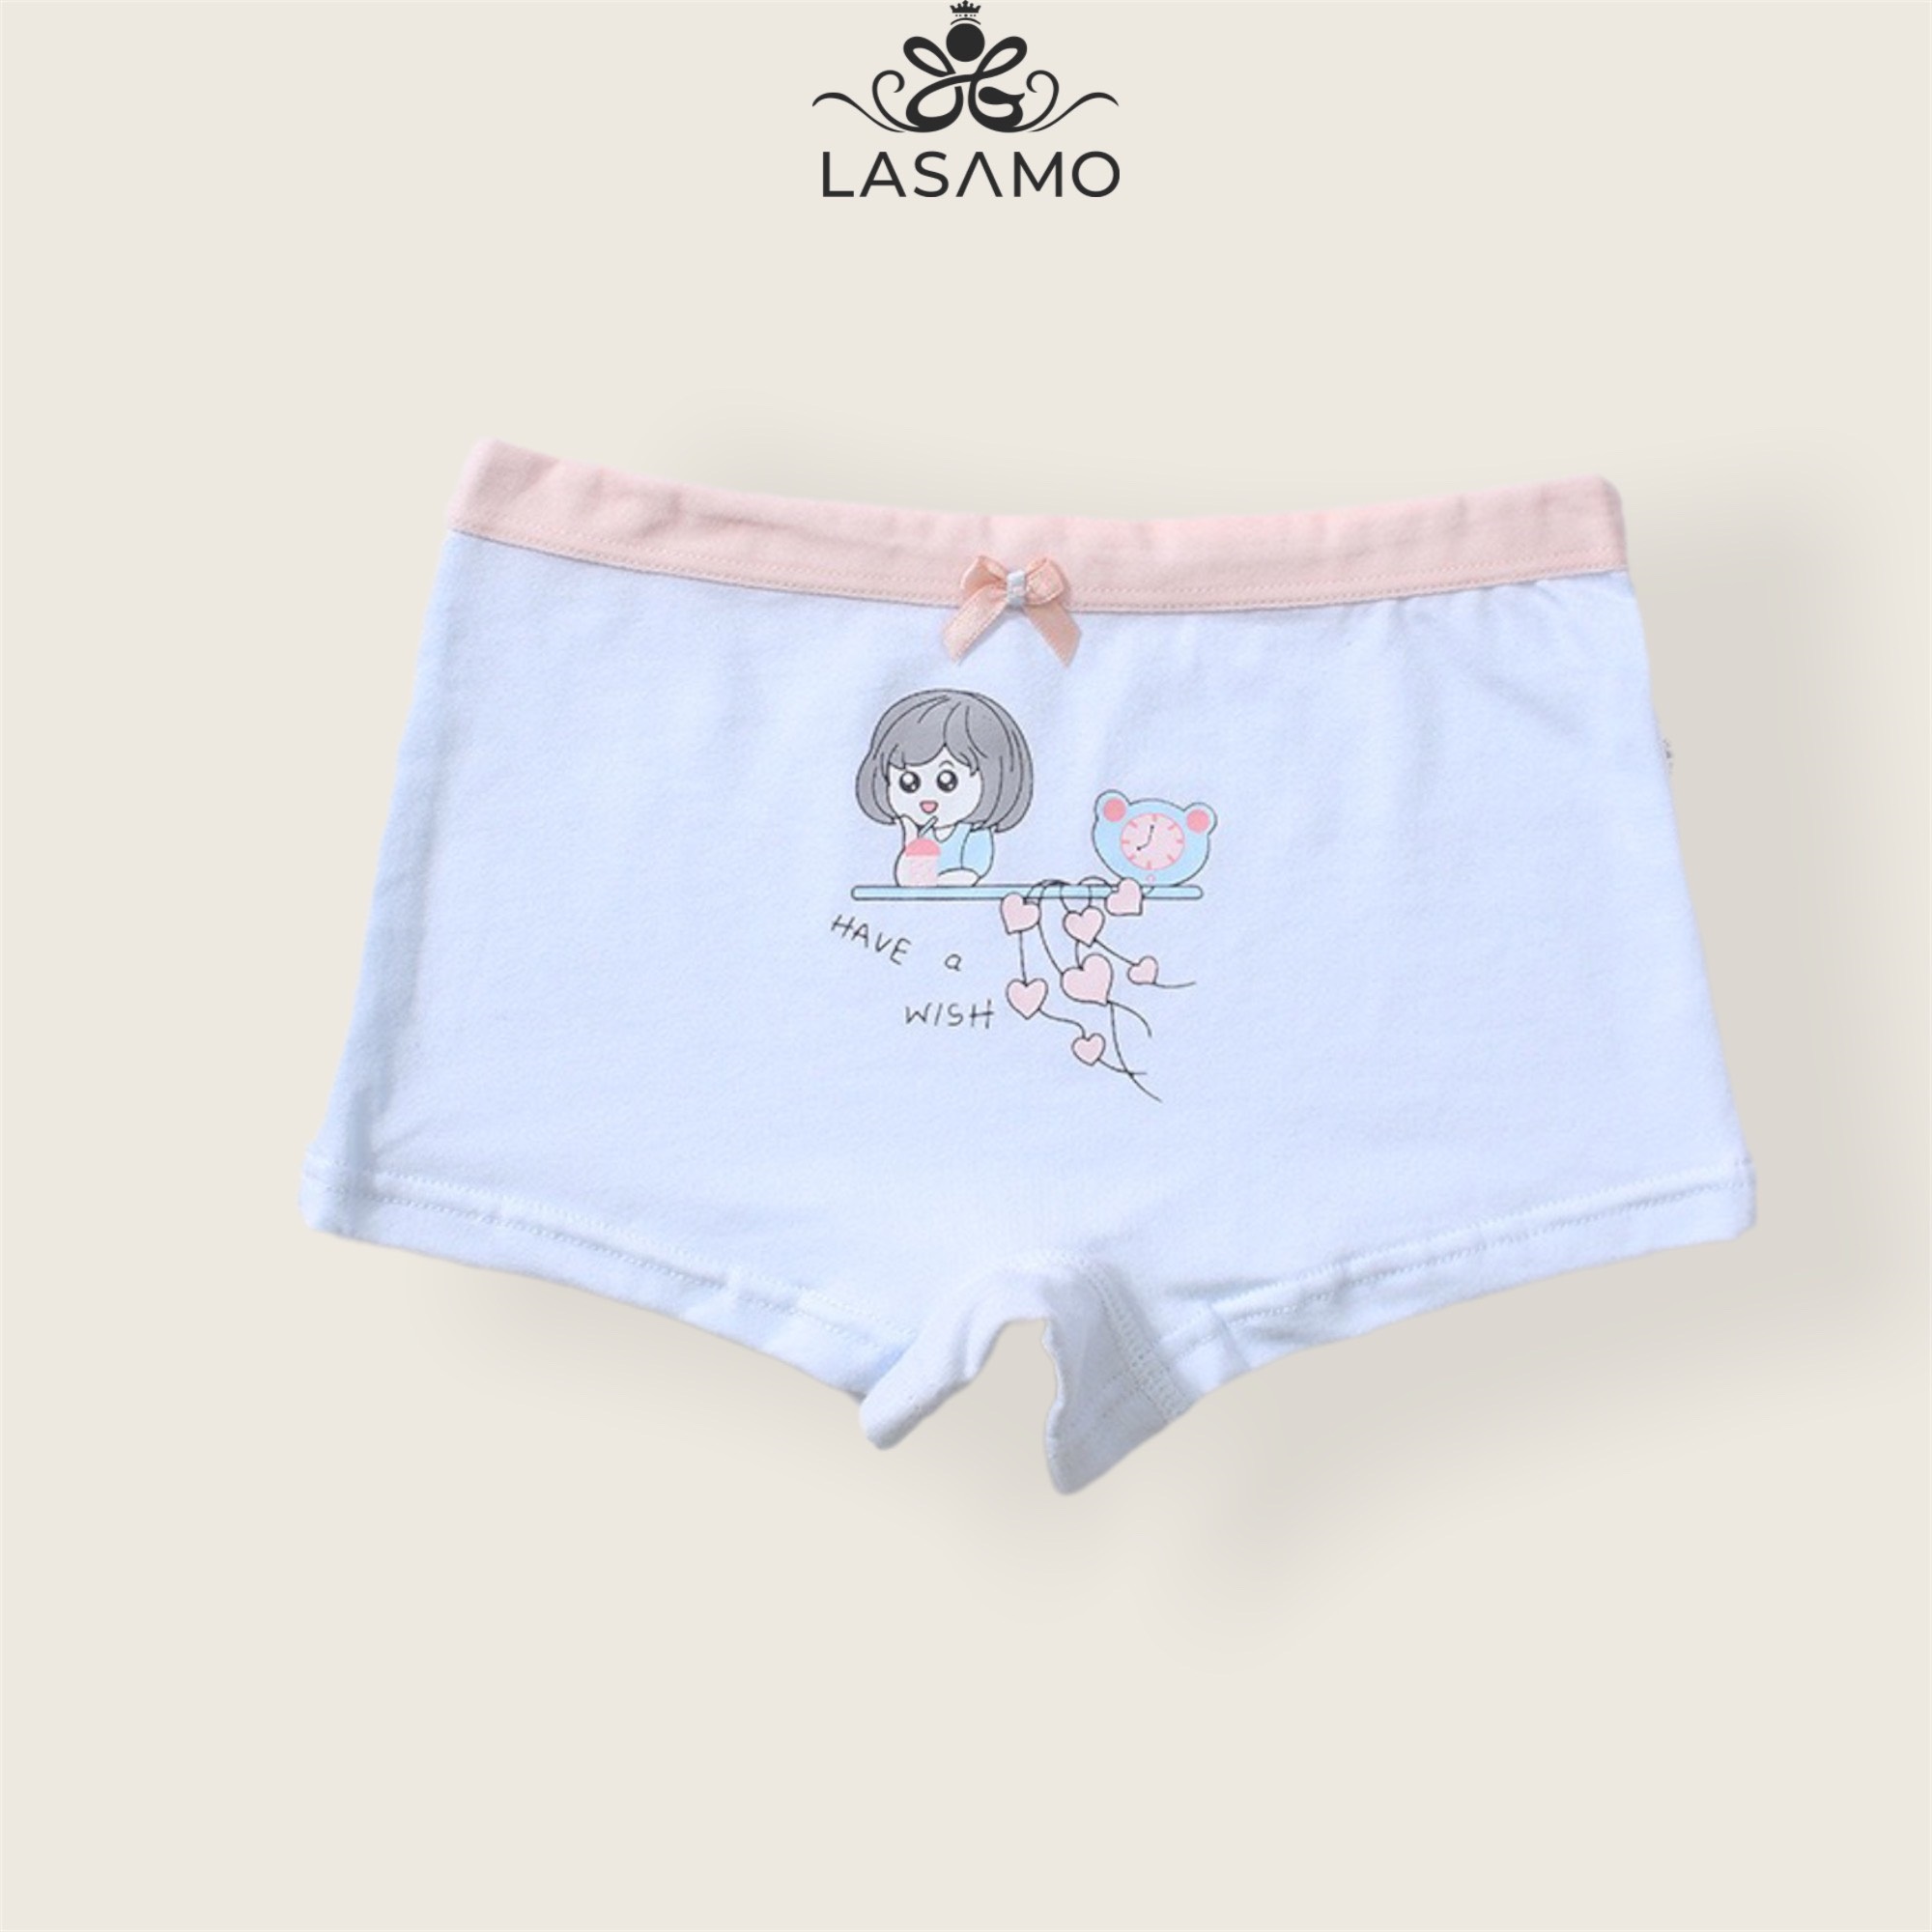 Quần chip bé gái, quần lót cho bé gái cotton cao cấp họa tiết Em bé dễ thương hãng LASAMO mã QLB015